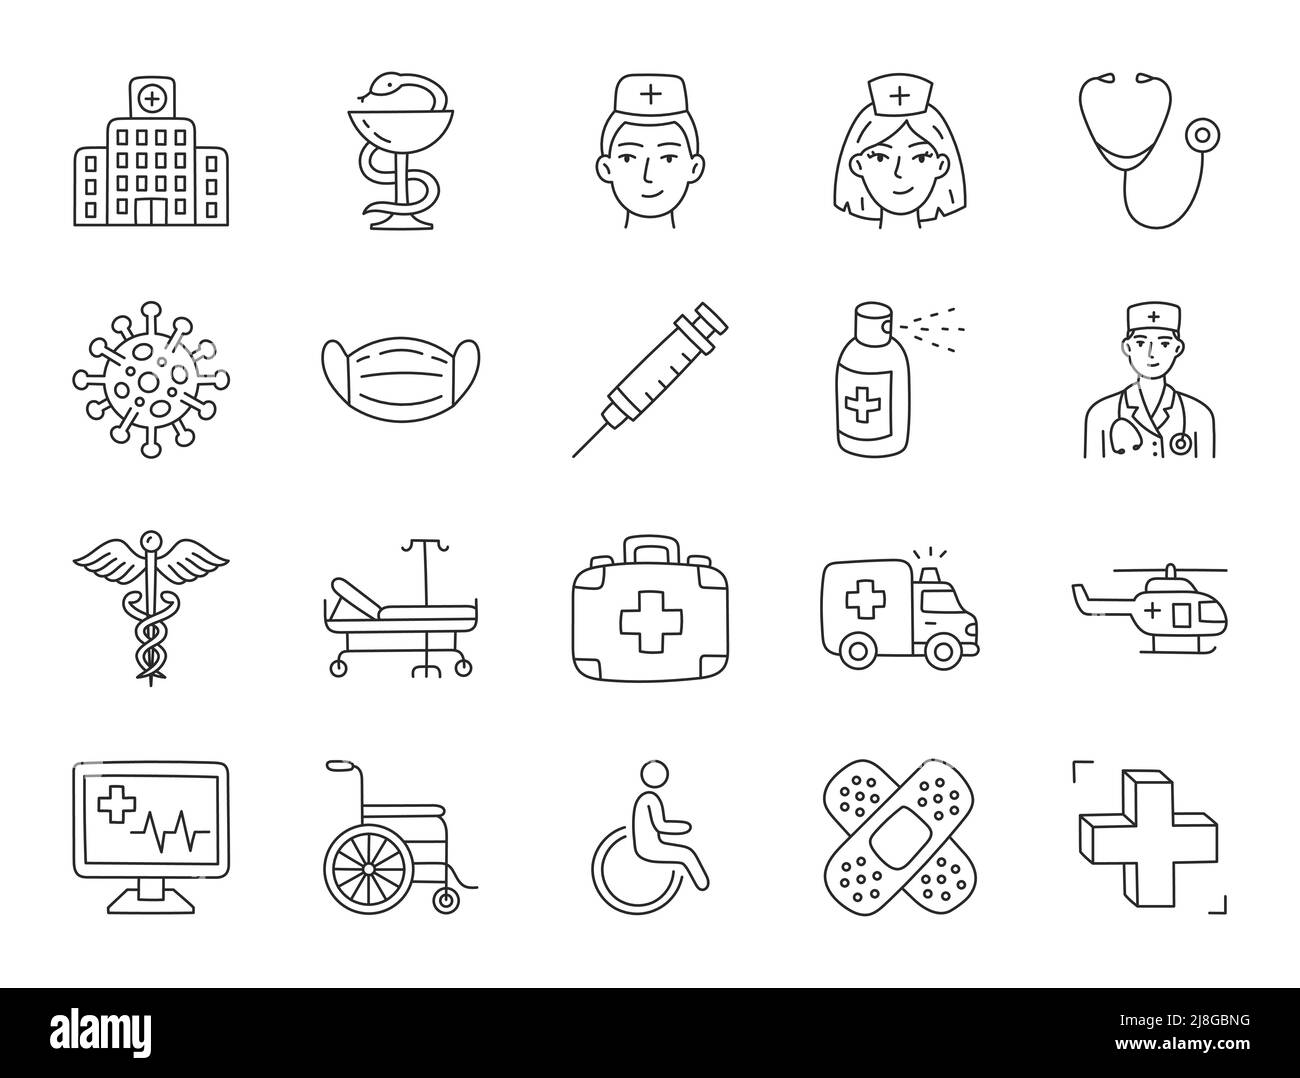 Illustrazione del doodle dell'ospedale medico compreso le icone - medico, infermiera, ambulanza, sedia a rotelle, caduco, spray, siringa, ciotola di igeia, farmacia. Sottile Illustrazione Vettoriale